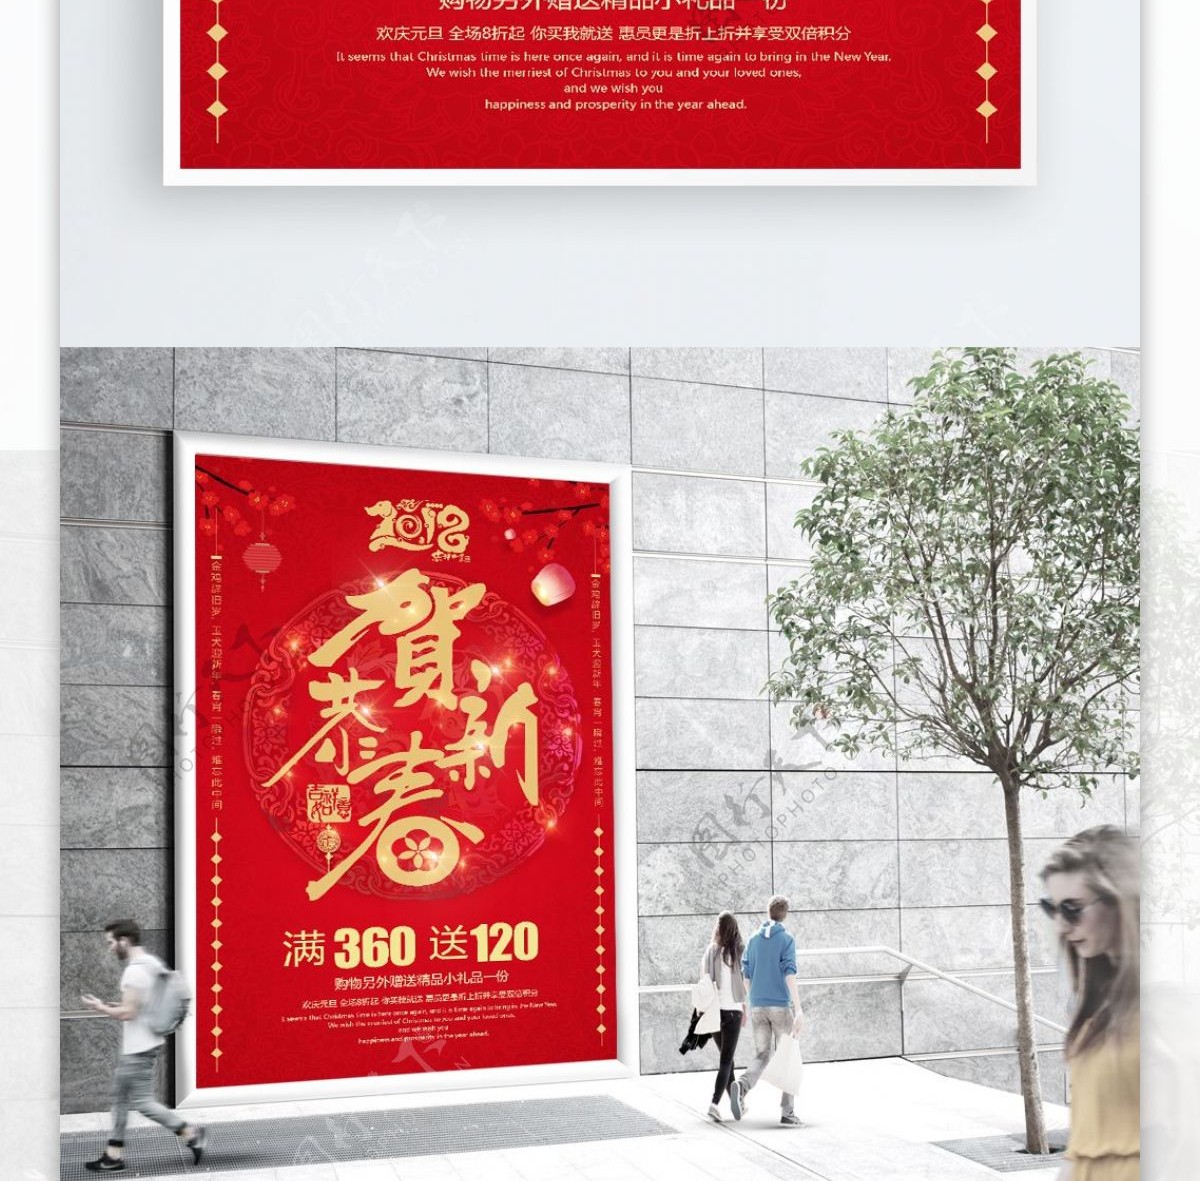 2018恭贺新春红色背景促销海报